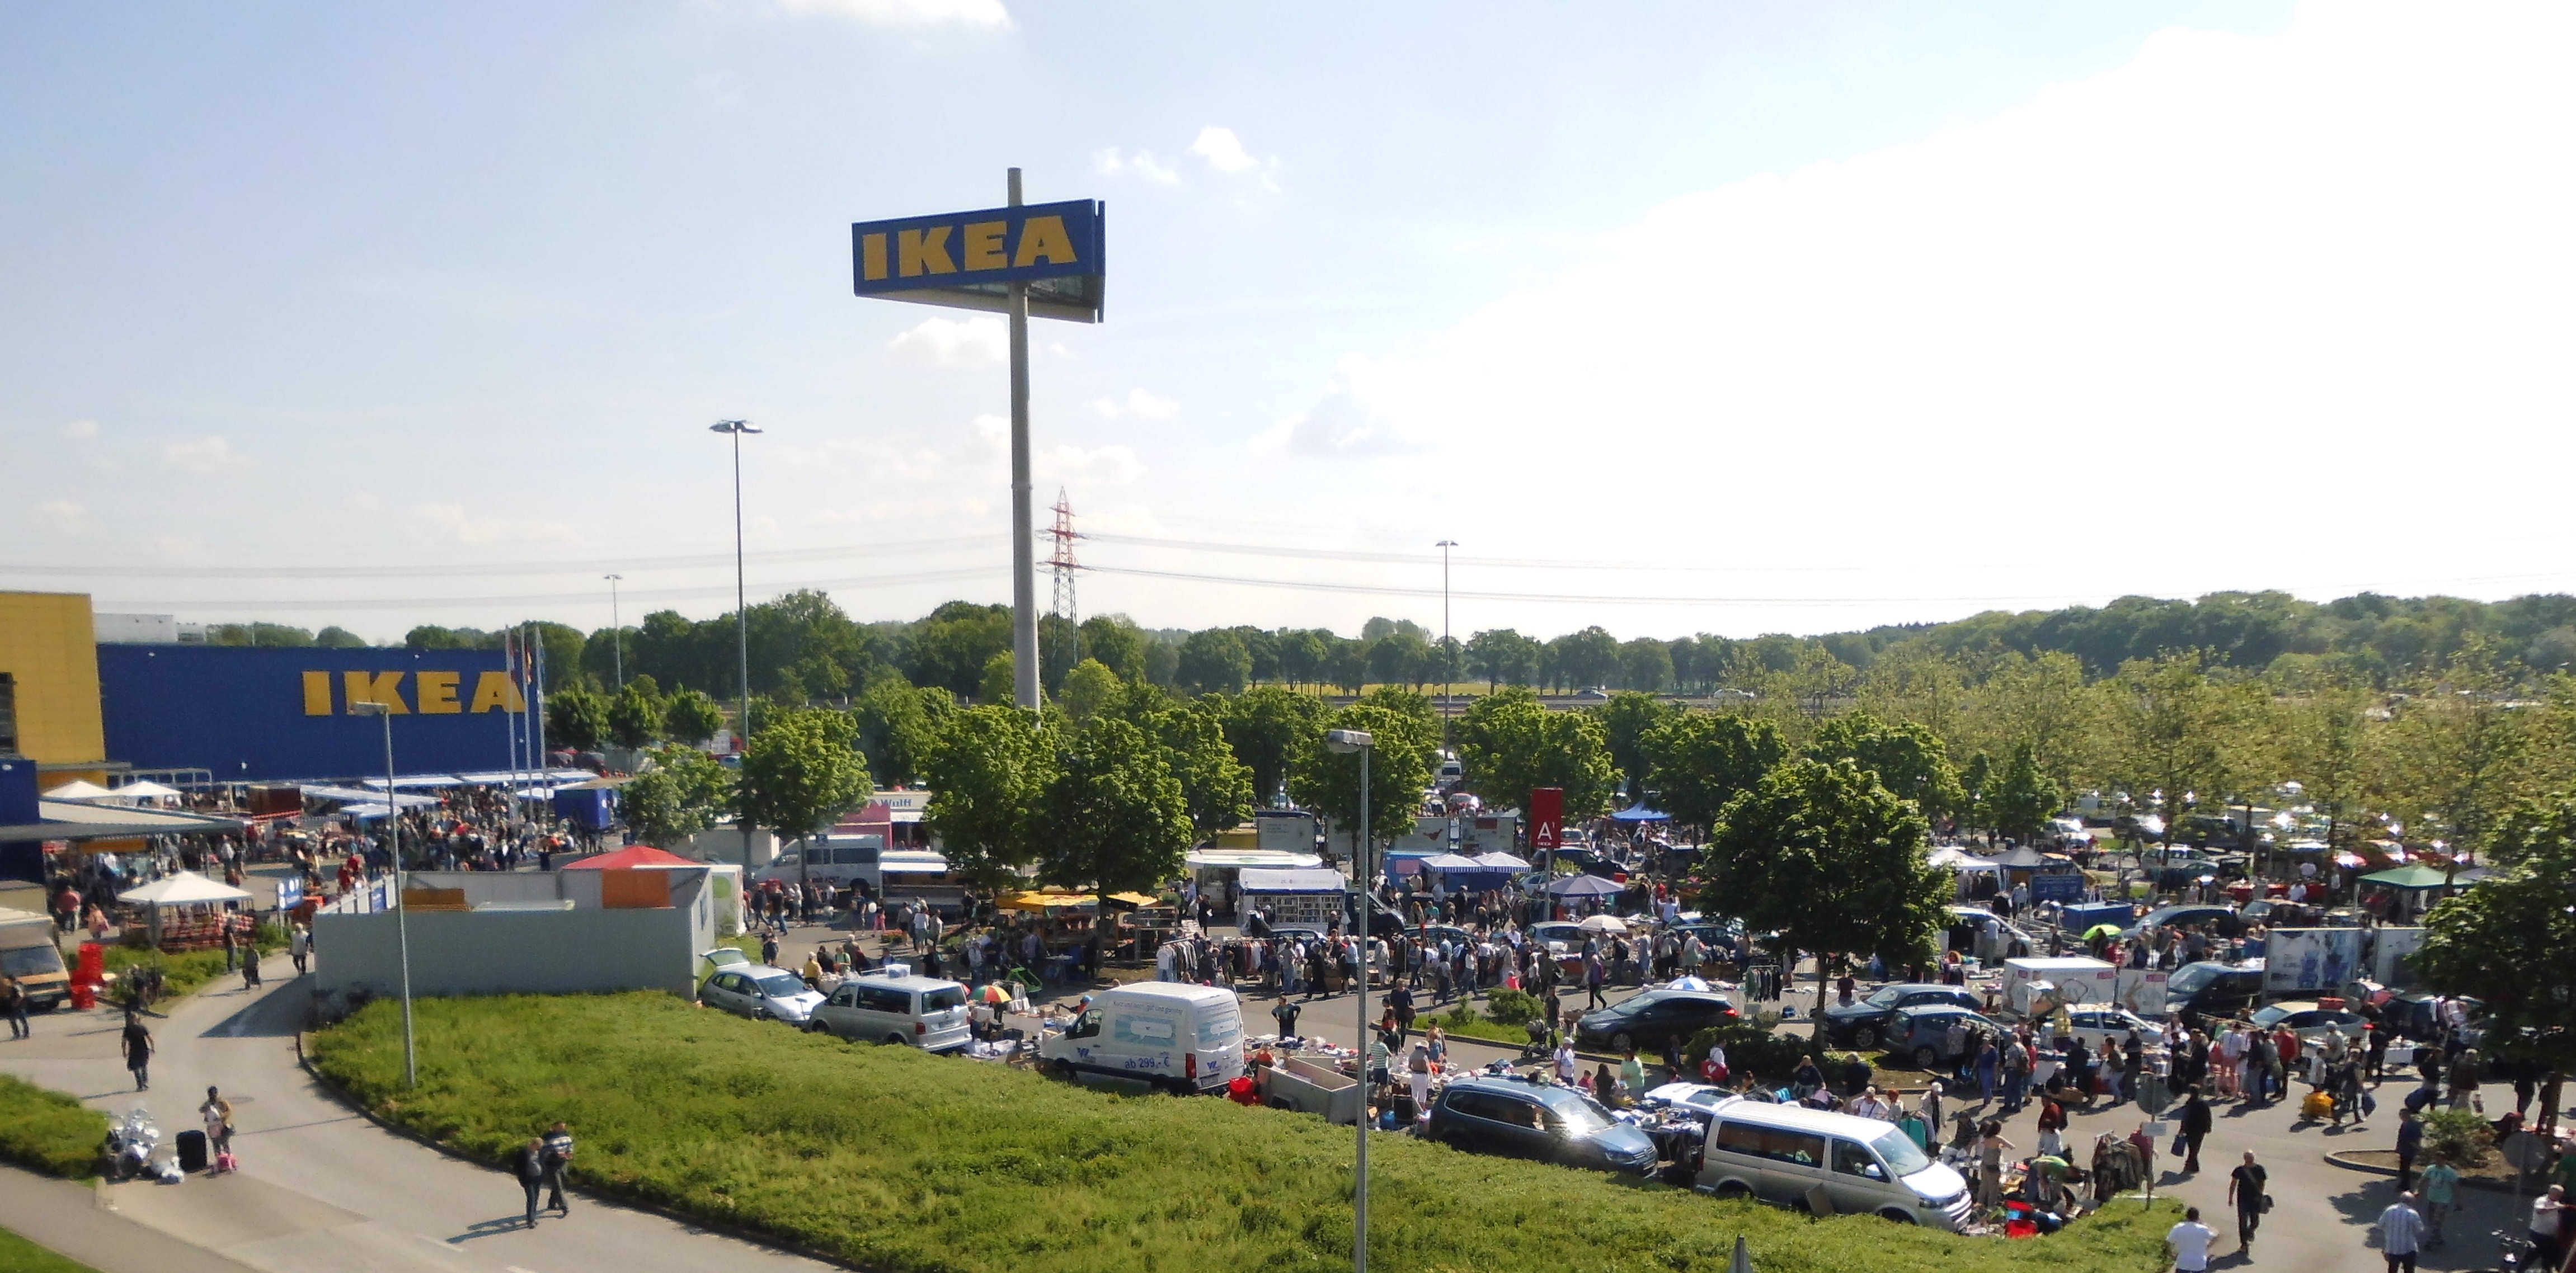 Elegantes Flohmarkt Oldenburg Ikea Bild Ideen und Bilder